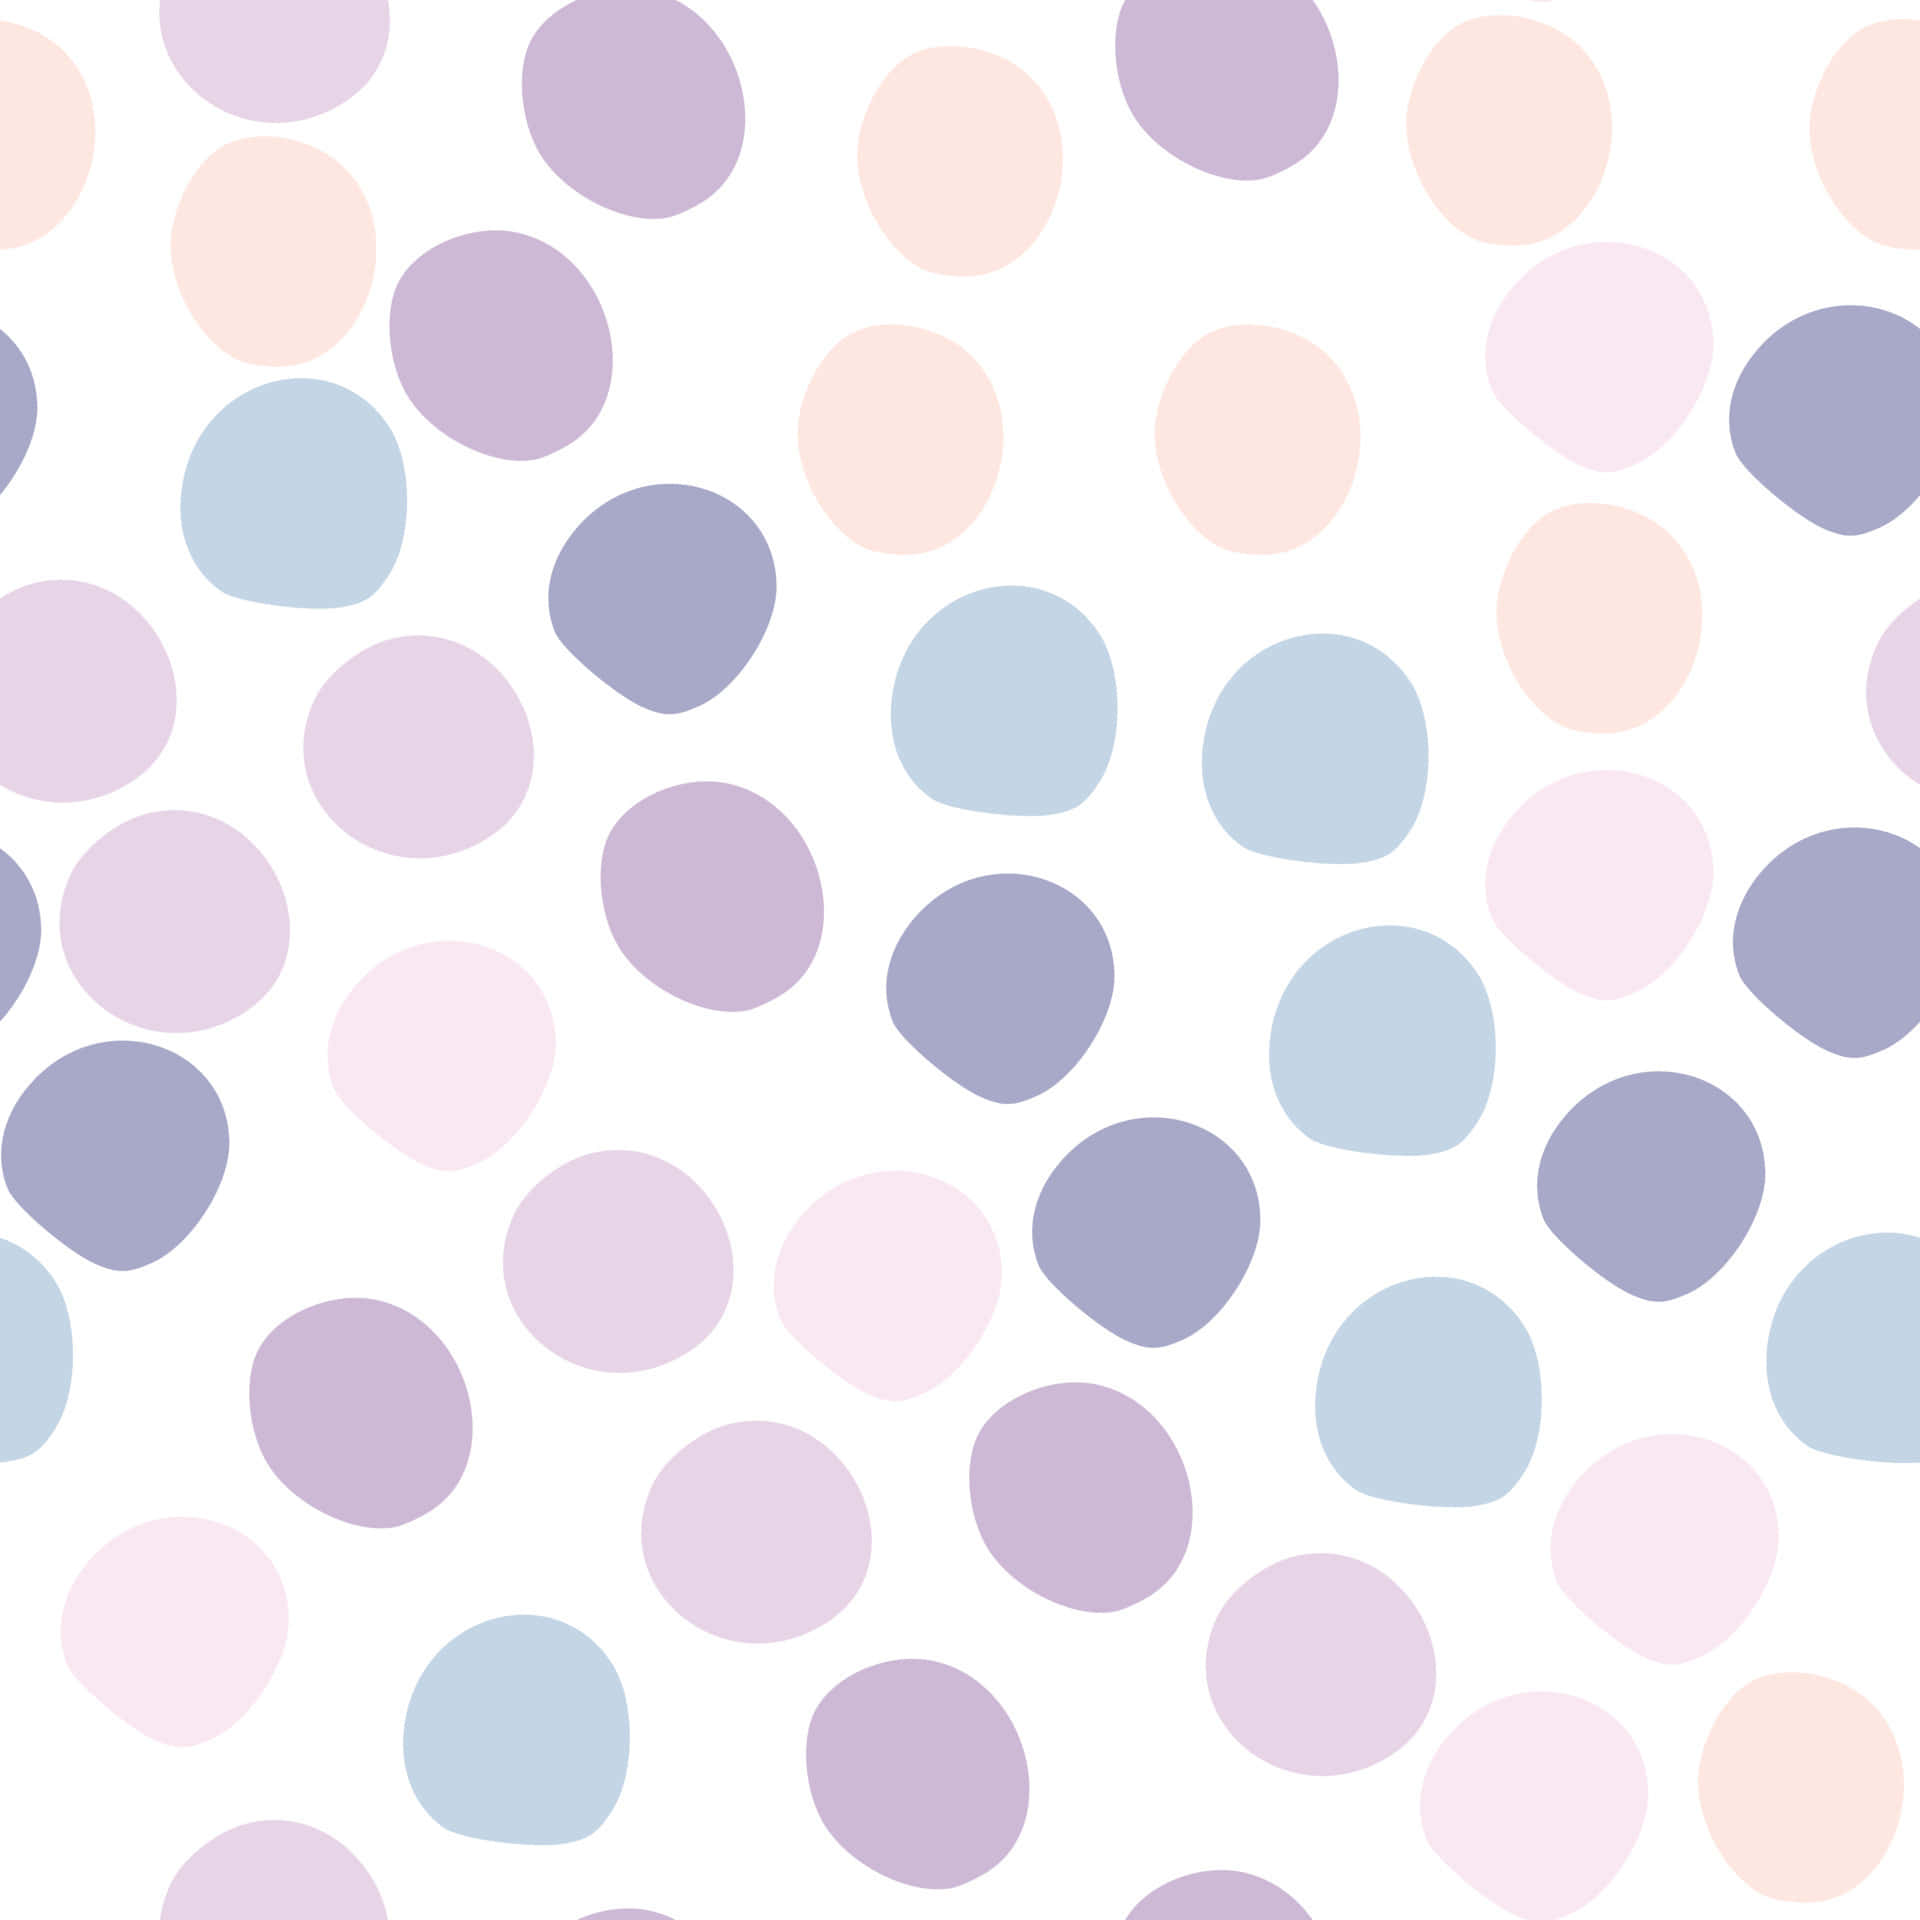 “Et muntert mønster af pink og hvide prikker.” Wallpaper